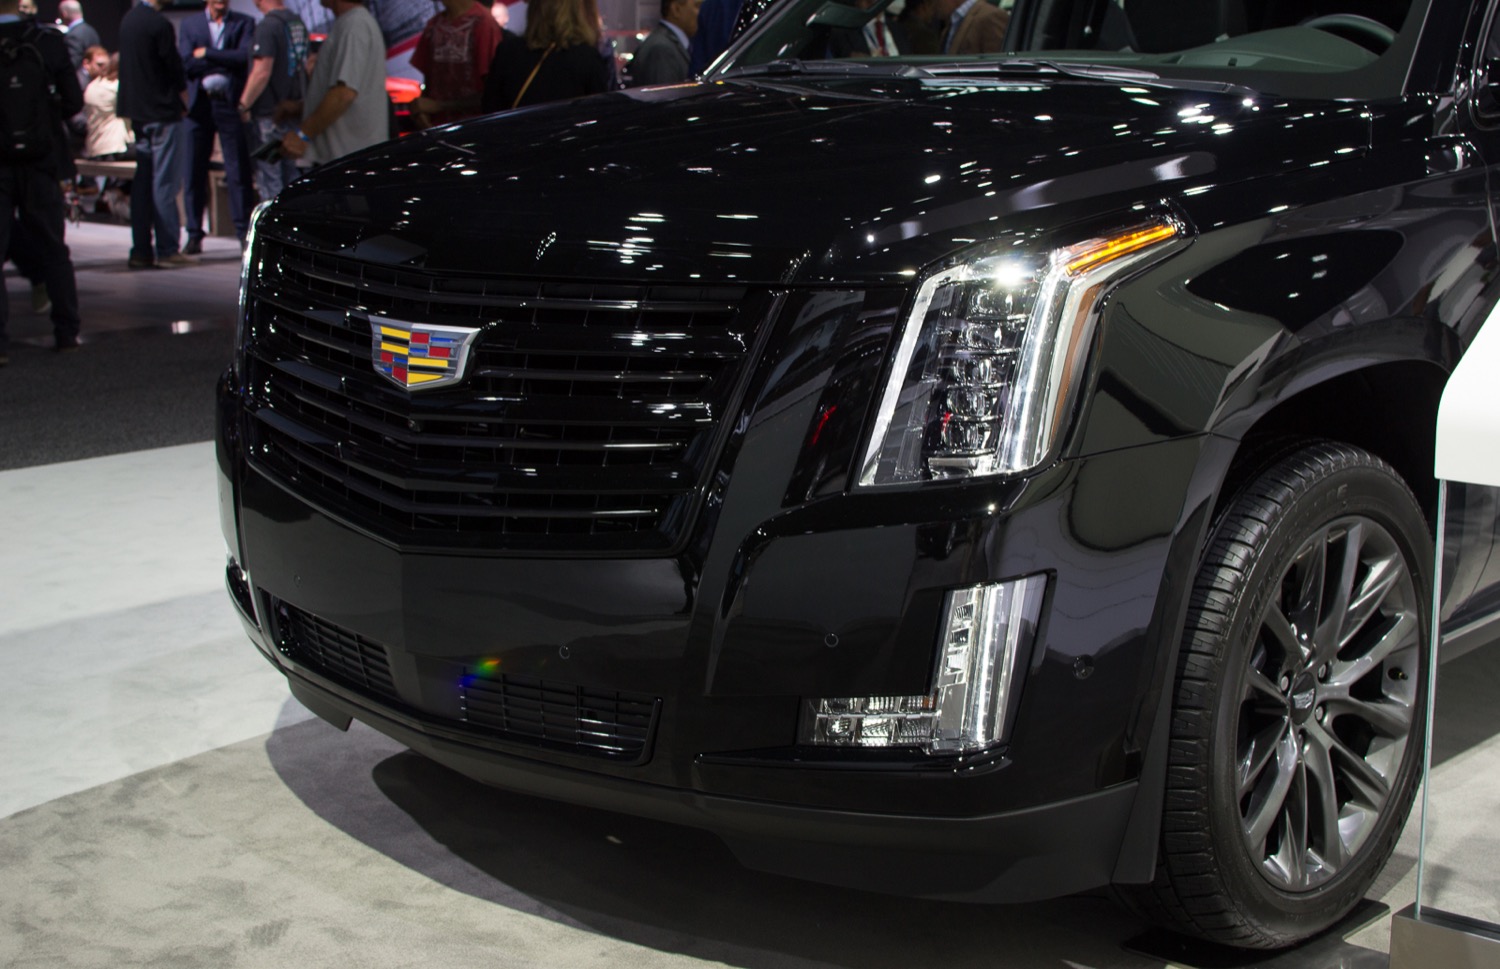 2019 Cadillac Escalade Sport Brings Aggressive Black-Accent Look